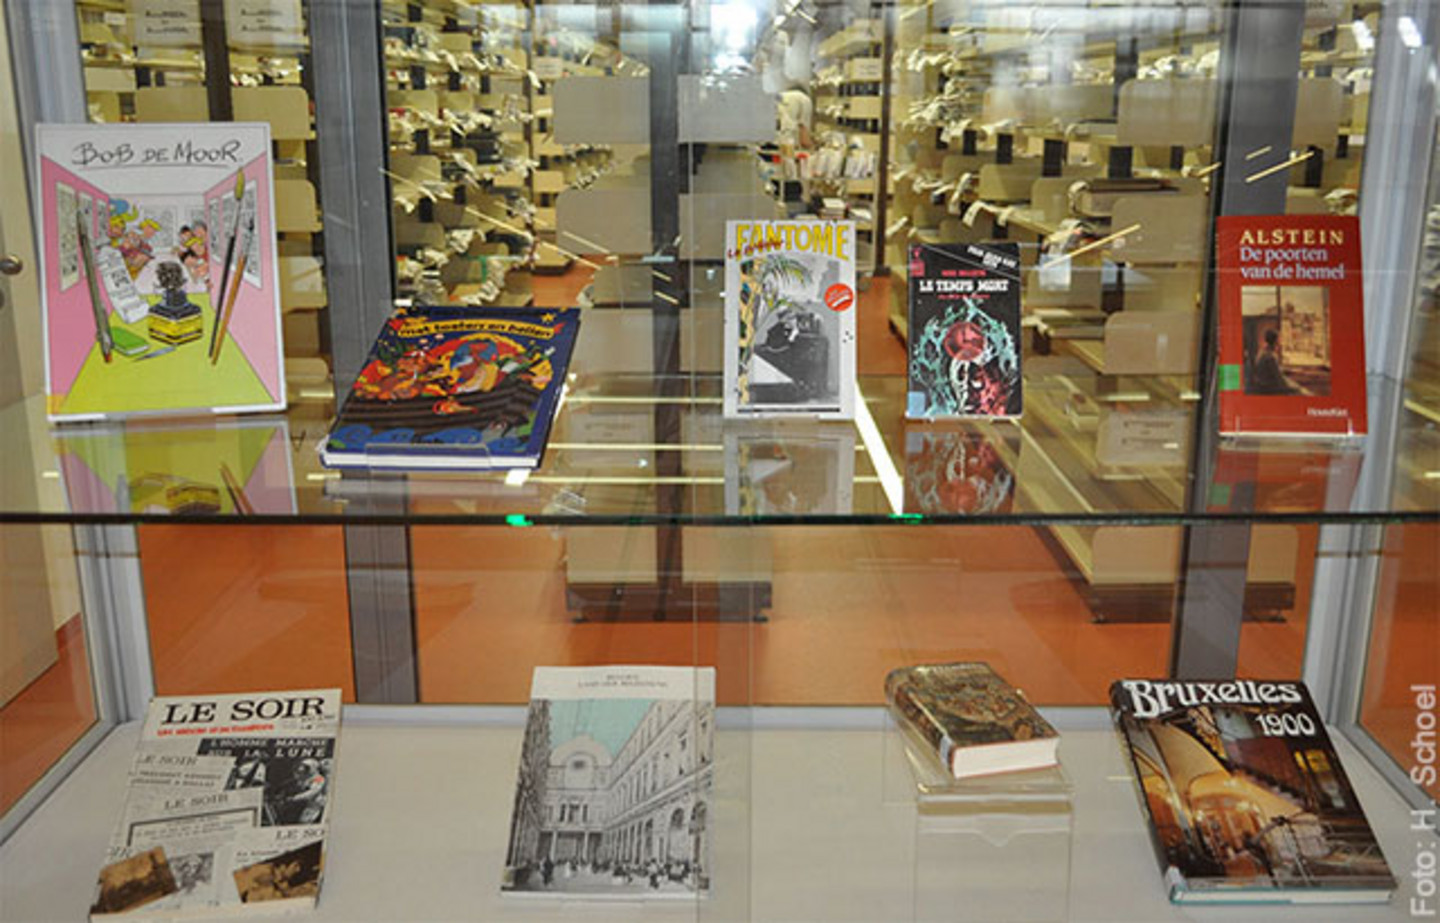 Ein Foto der Ausstellung "Die Bibliothek des Belgischen Hauses" die den Querschnitt des Bibliotheksbestandes zeigt. In einer Vitrine stehen mehrere Bücher.